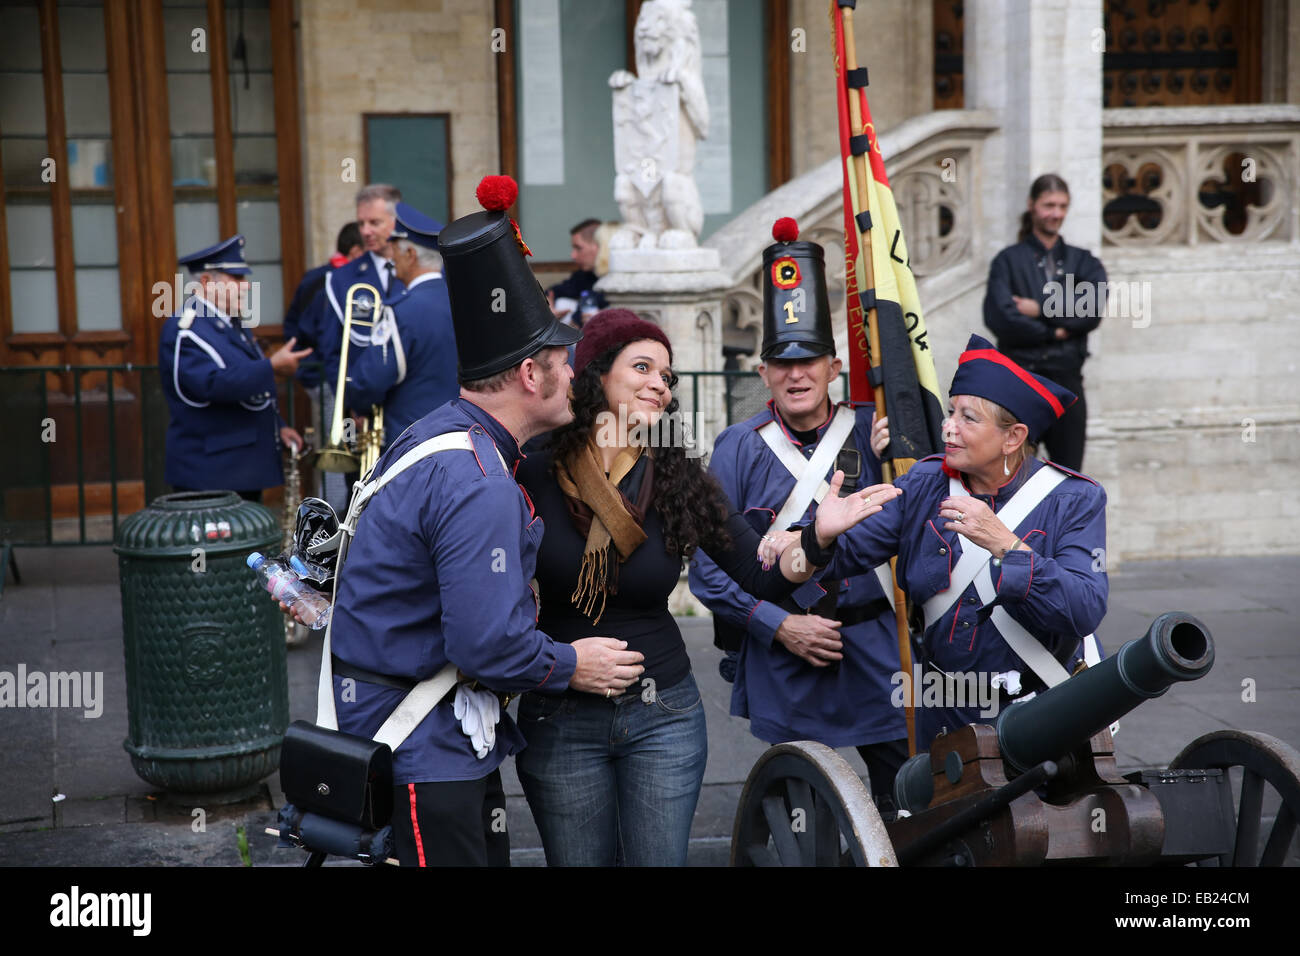 Tomando imagen turística de Bruselas uniforme soldado Foto de stock